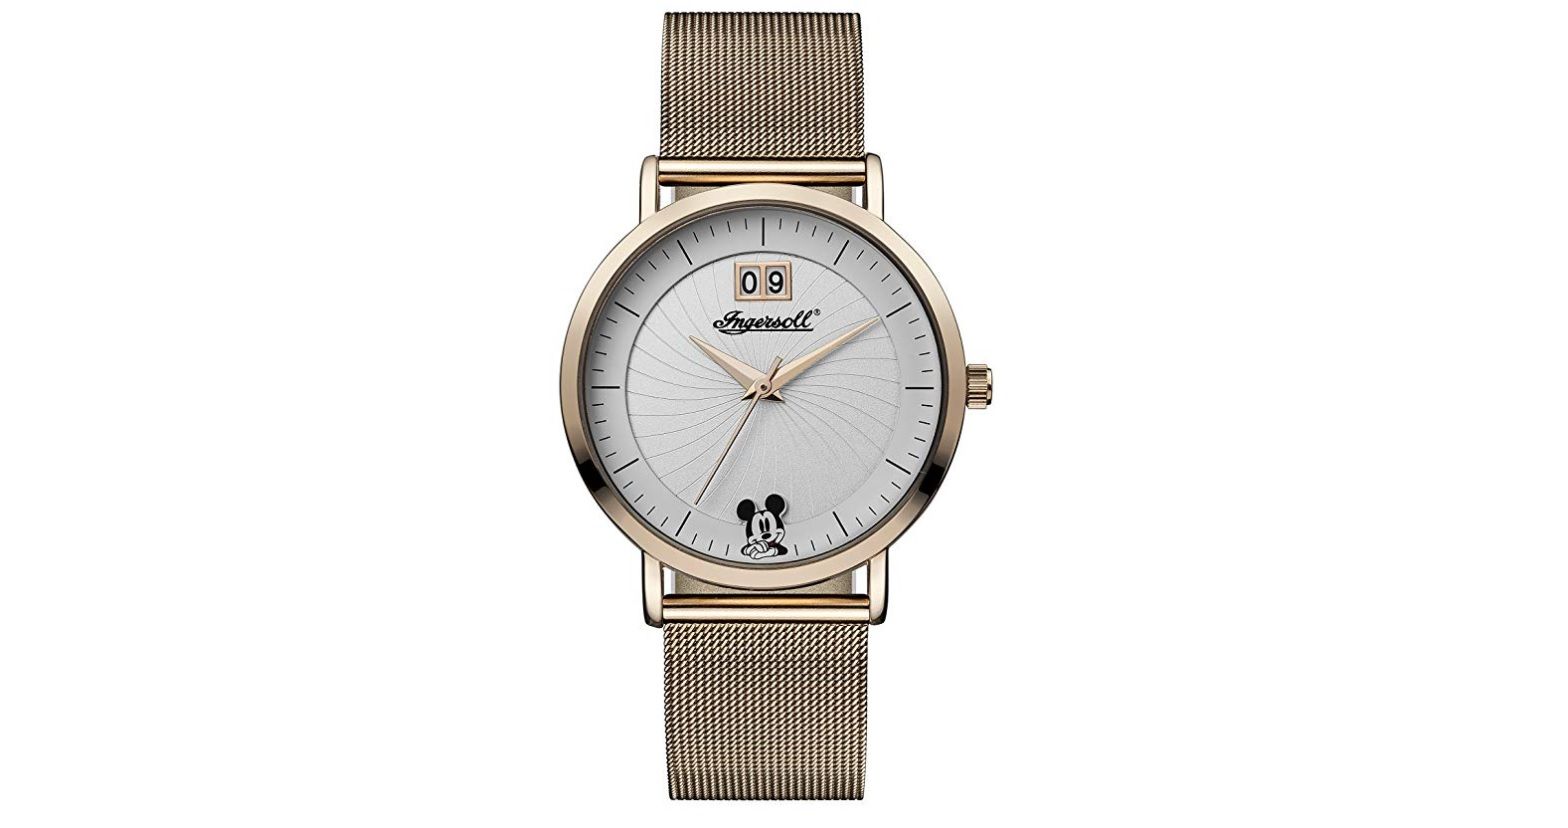 ¡Descuentazo! Reloj Ingersoll ID00504 Disney por sólo 42,34€ (antes 130€)